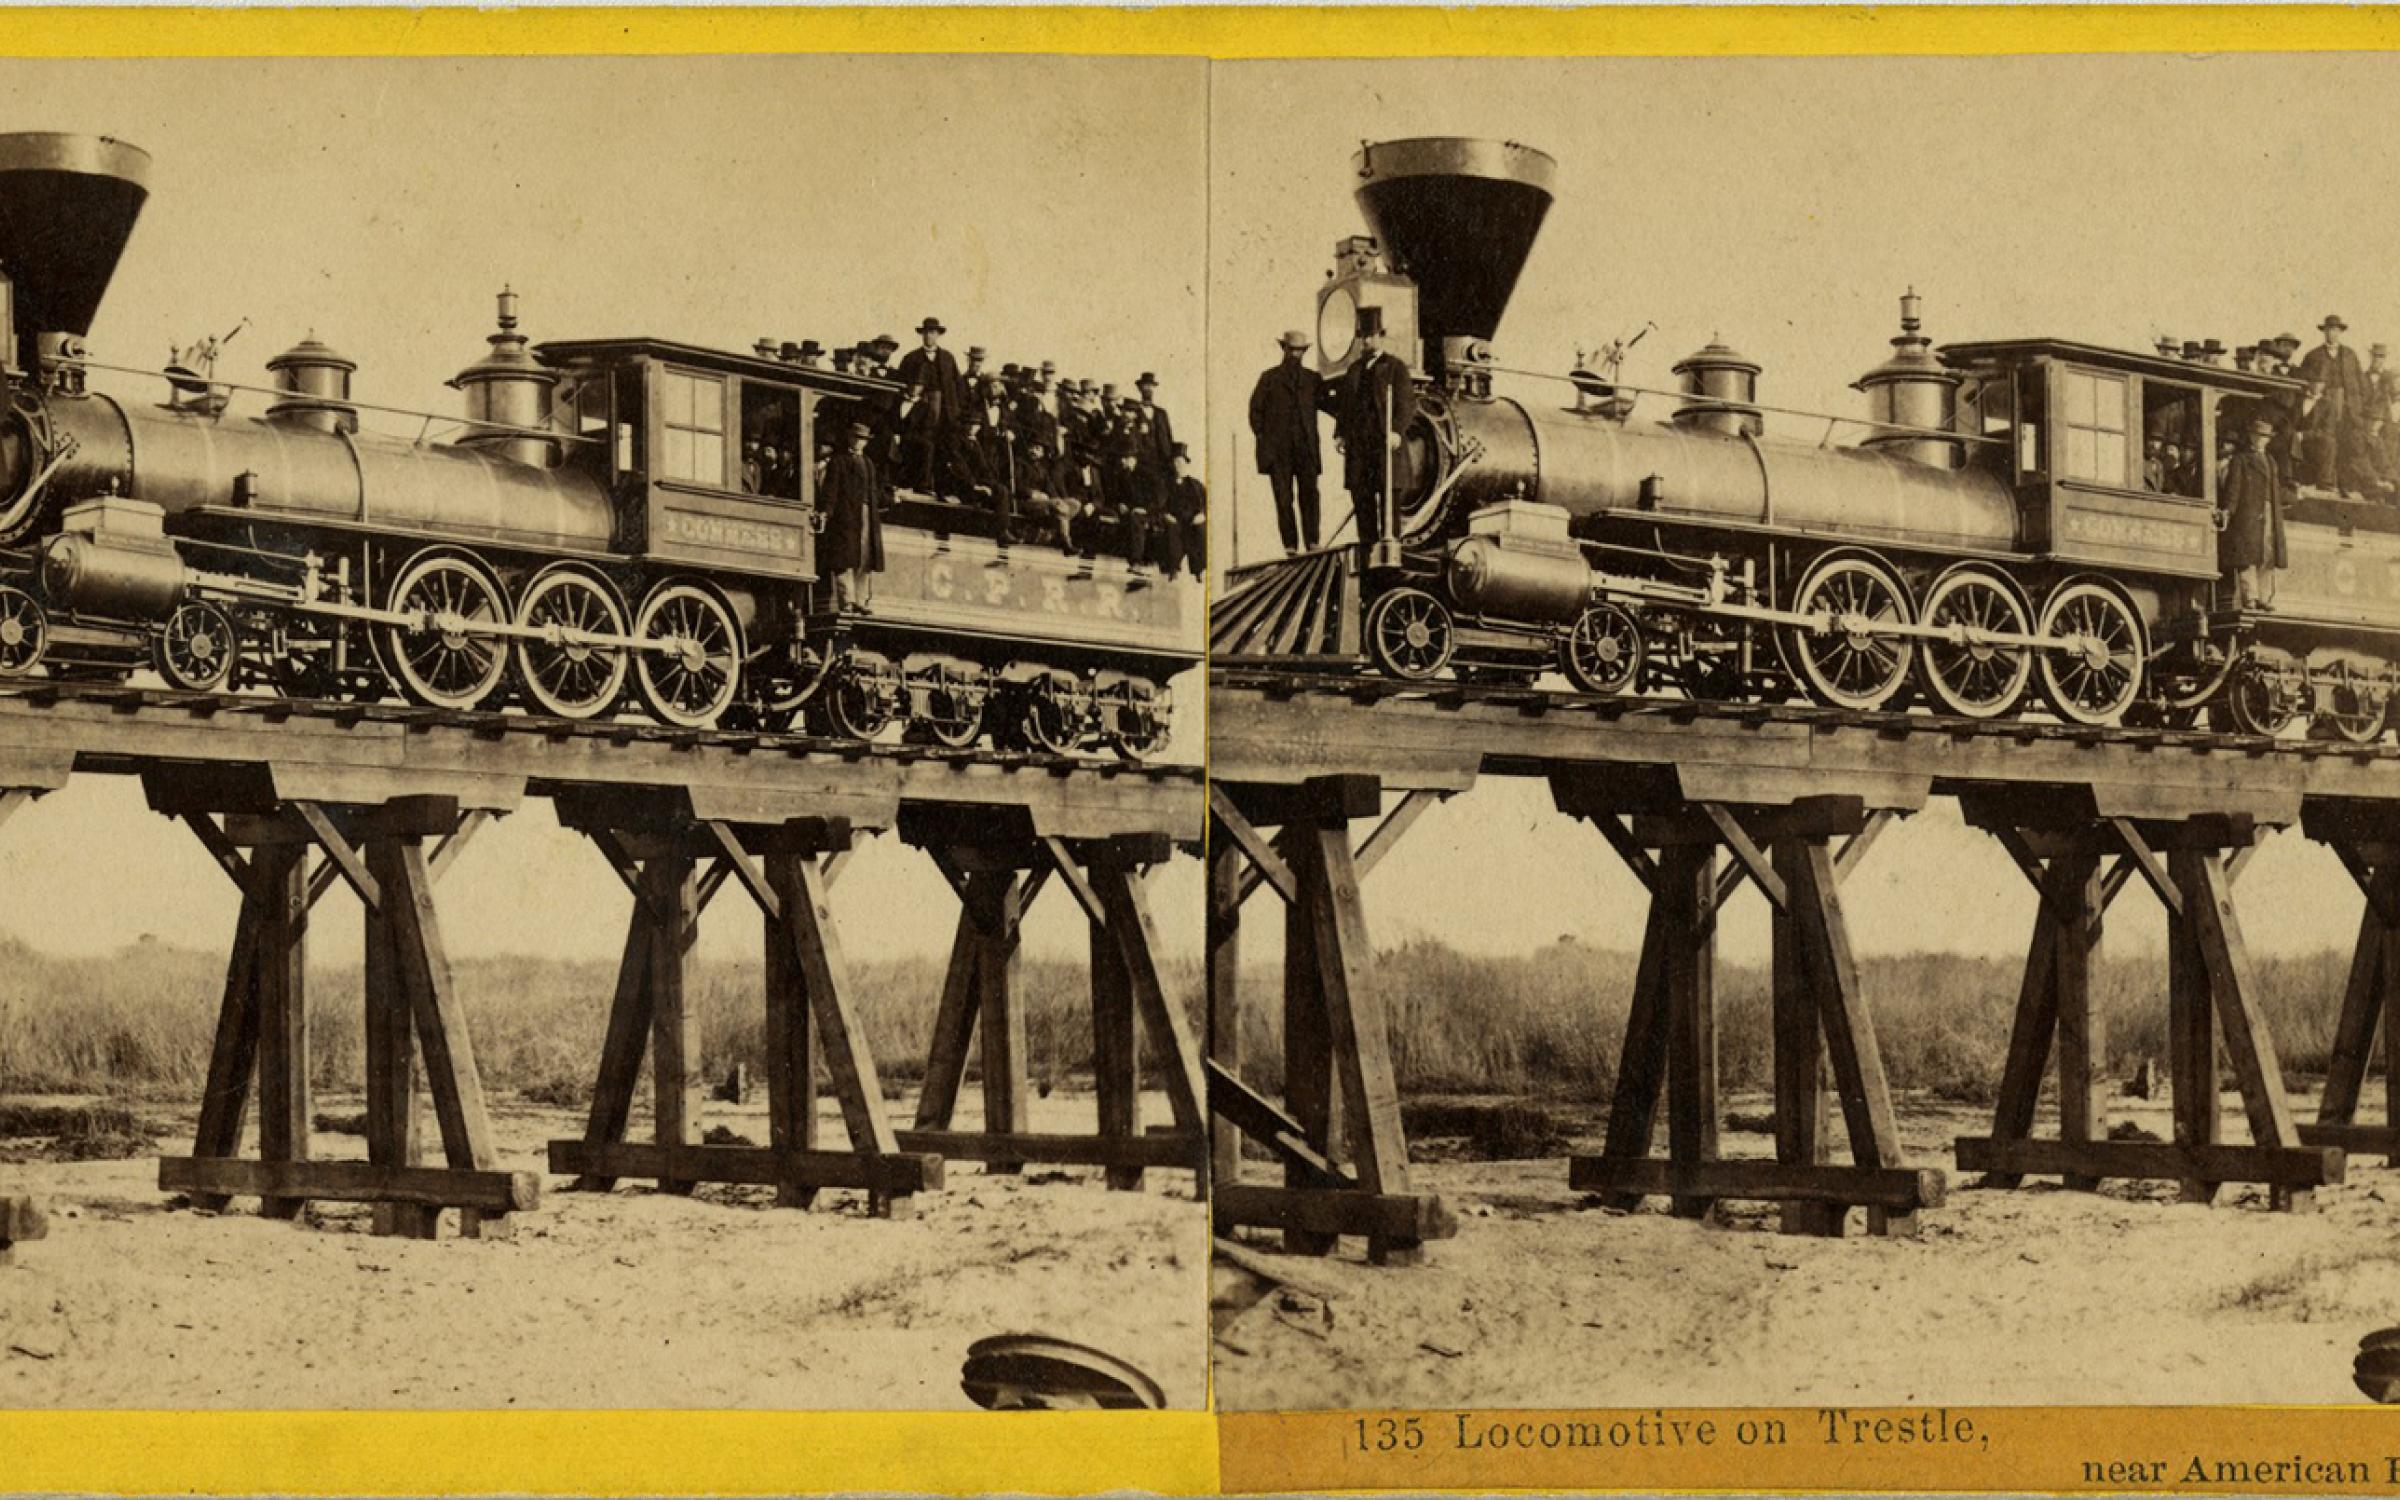 Alfred A. Hart (American, 1816–1908), Locomotive on Trestle, near American River, 1865, albumen stereograph, courtesy Union Pacific Railroad Museum.